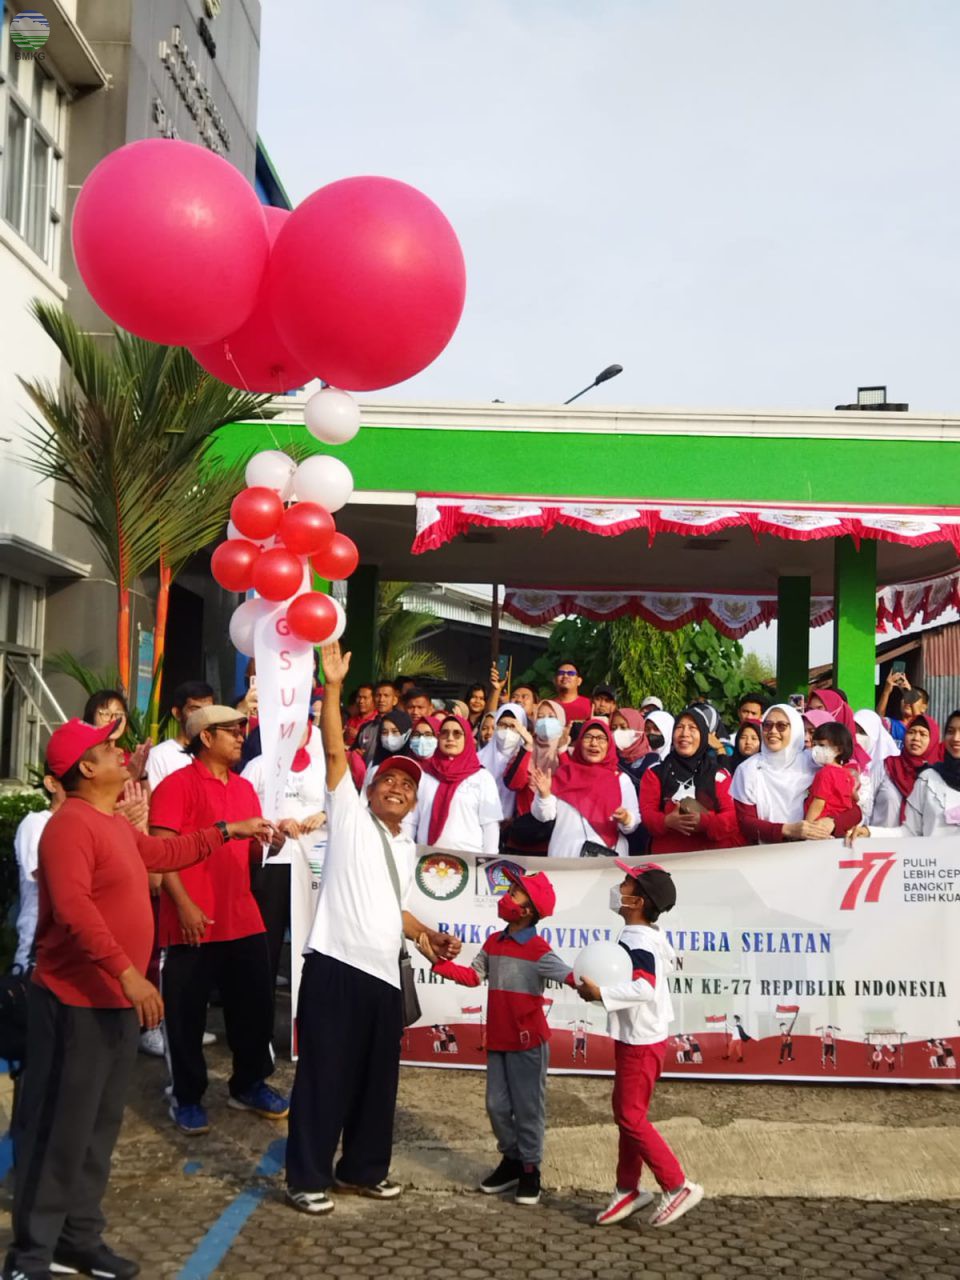 BMKG Sumatera Selatan Menggelar Serangkaian Kegiatan Peringatan HUT ke-77 Republik Indonesia